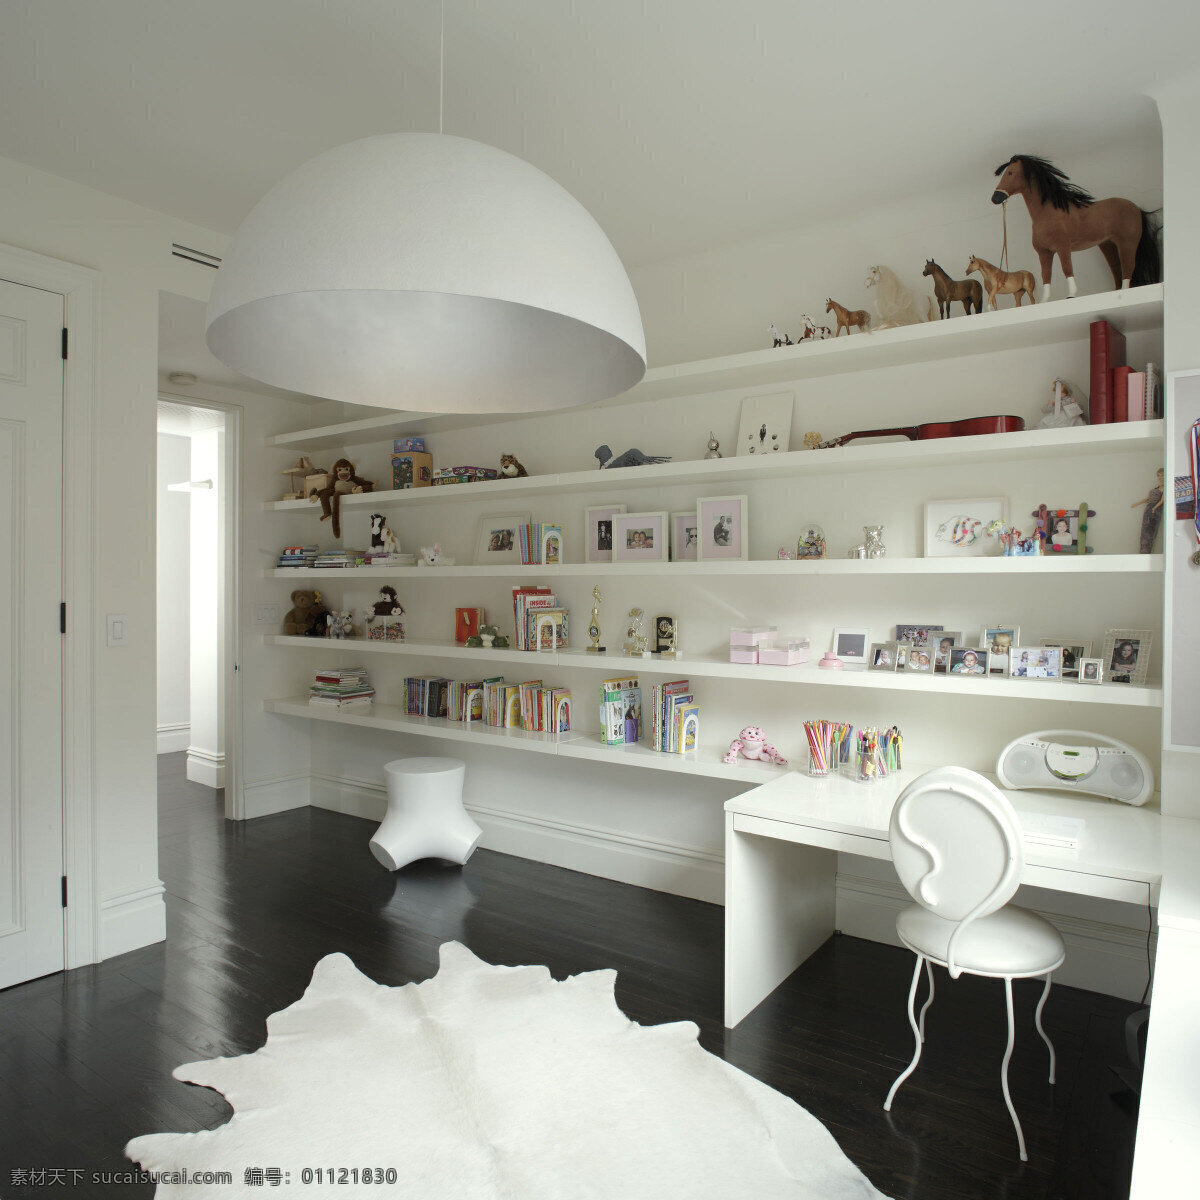 现代 时尚 客厅 白色 展示架 室内装修 效果图 白色地毯 白色书架 白色桌子 客厅装修